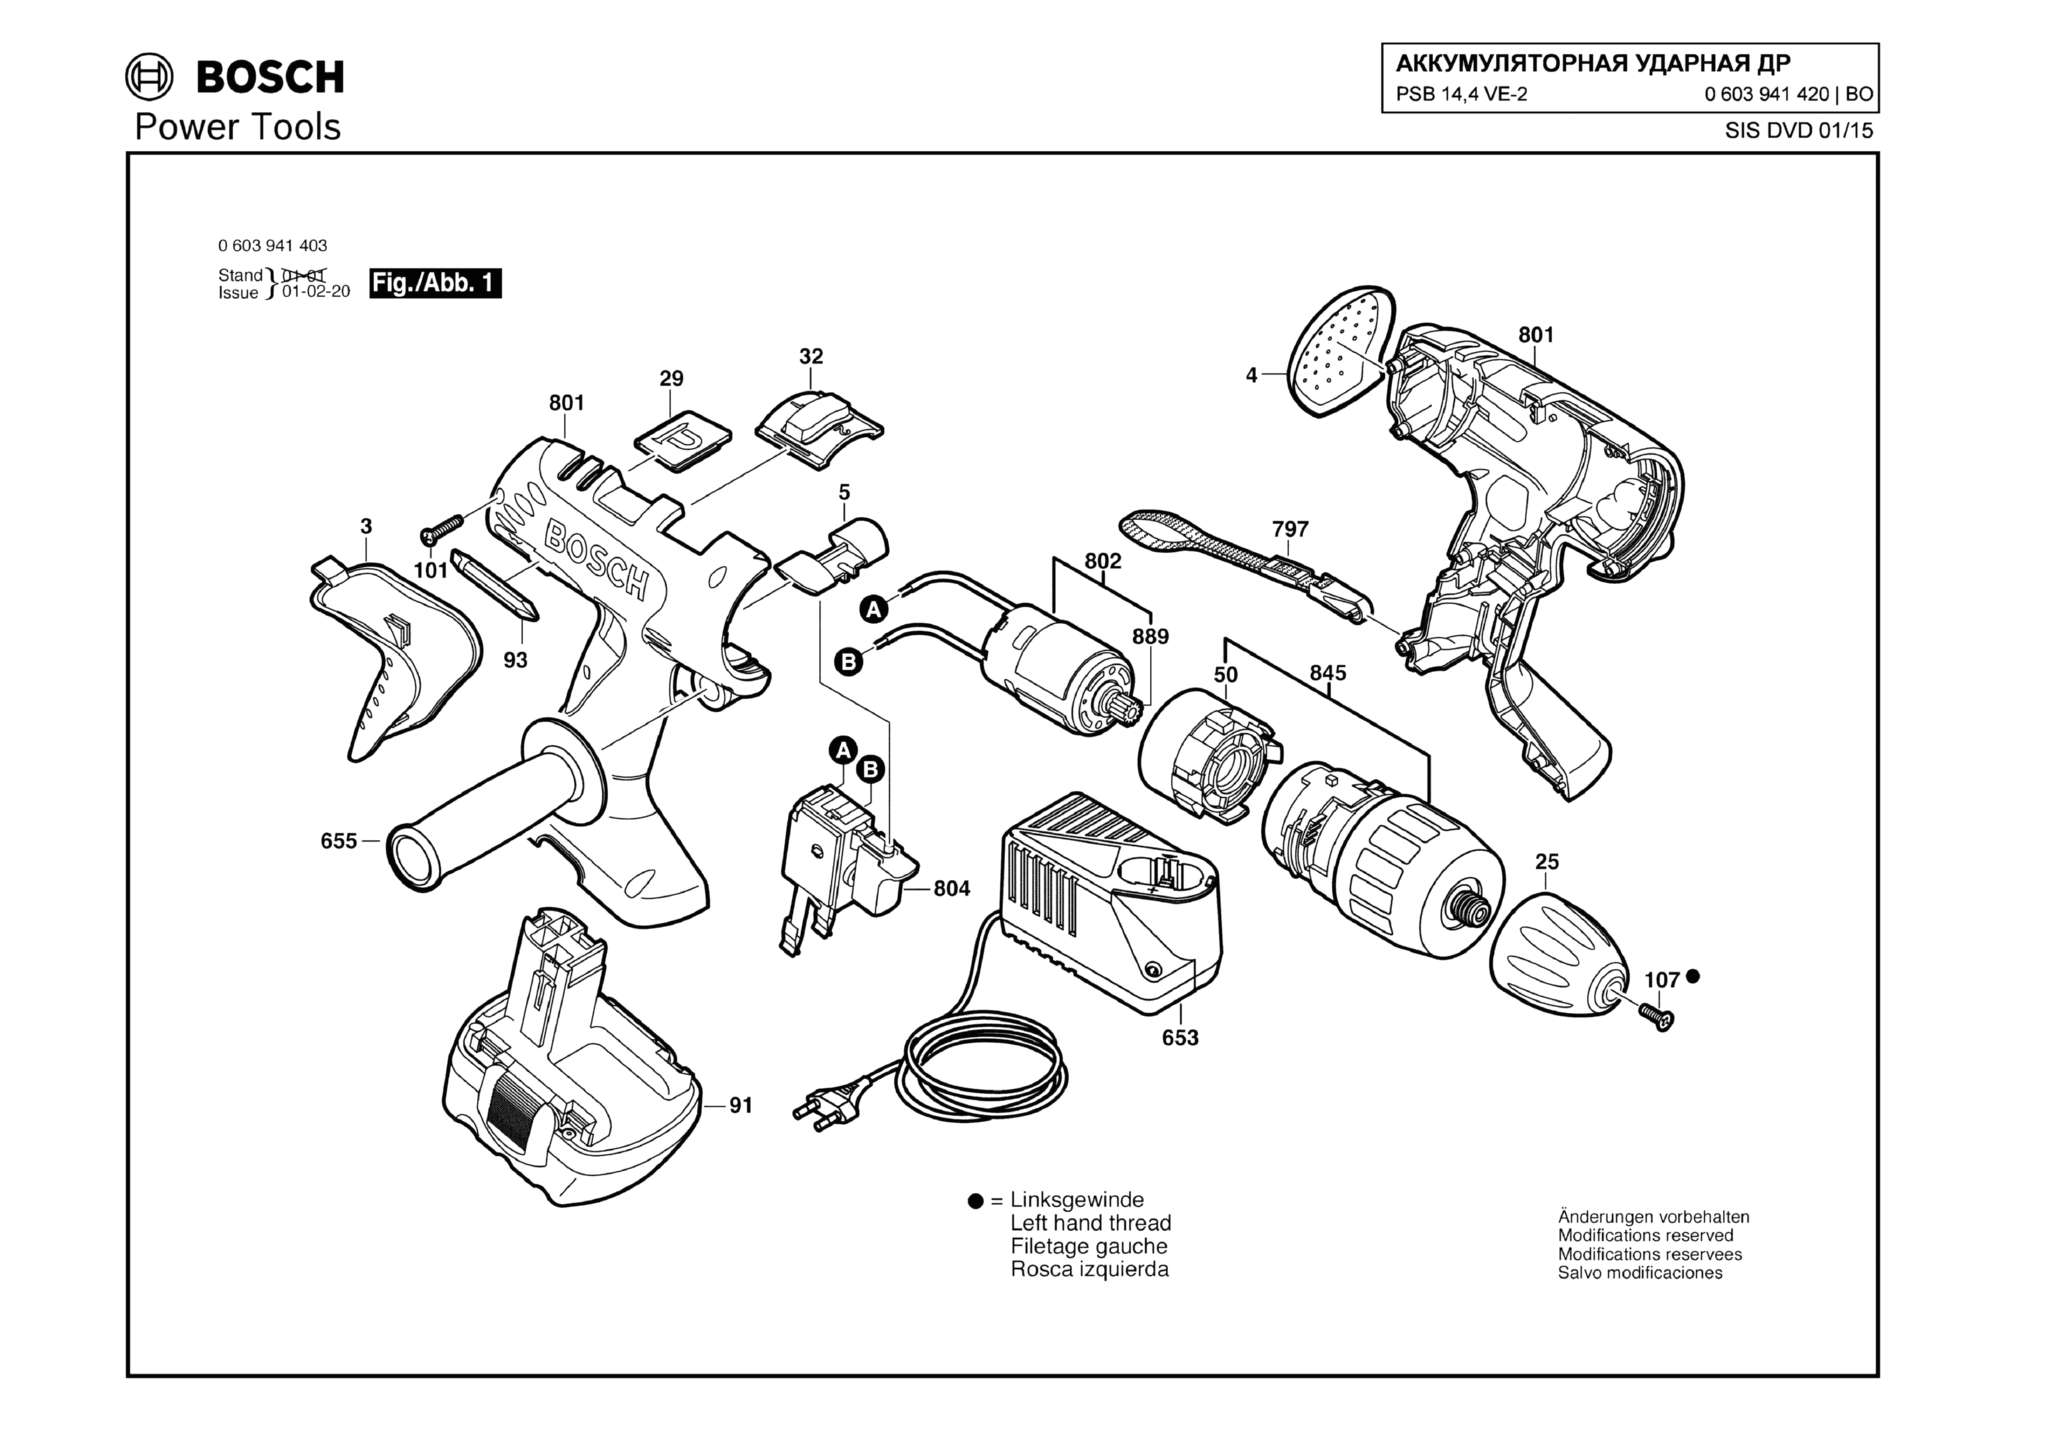 Запчасти, схема и деталировка Bosch PSB 14,4 VE-2 (ТИП 0603941420)